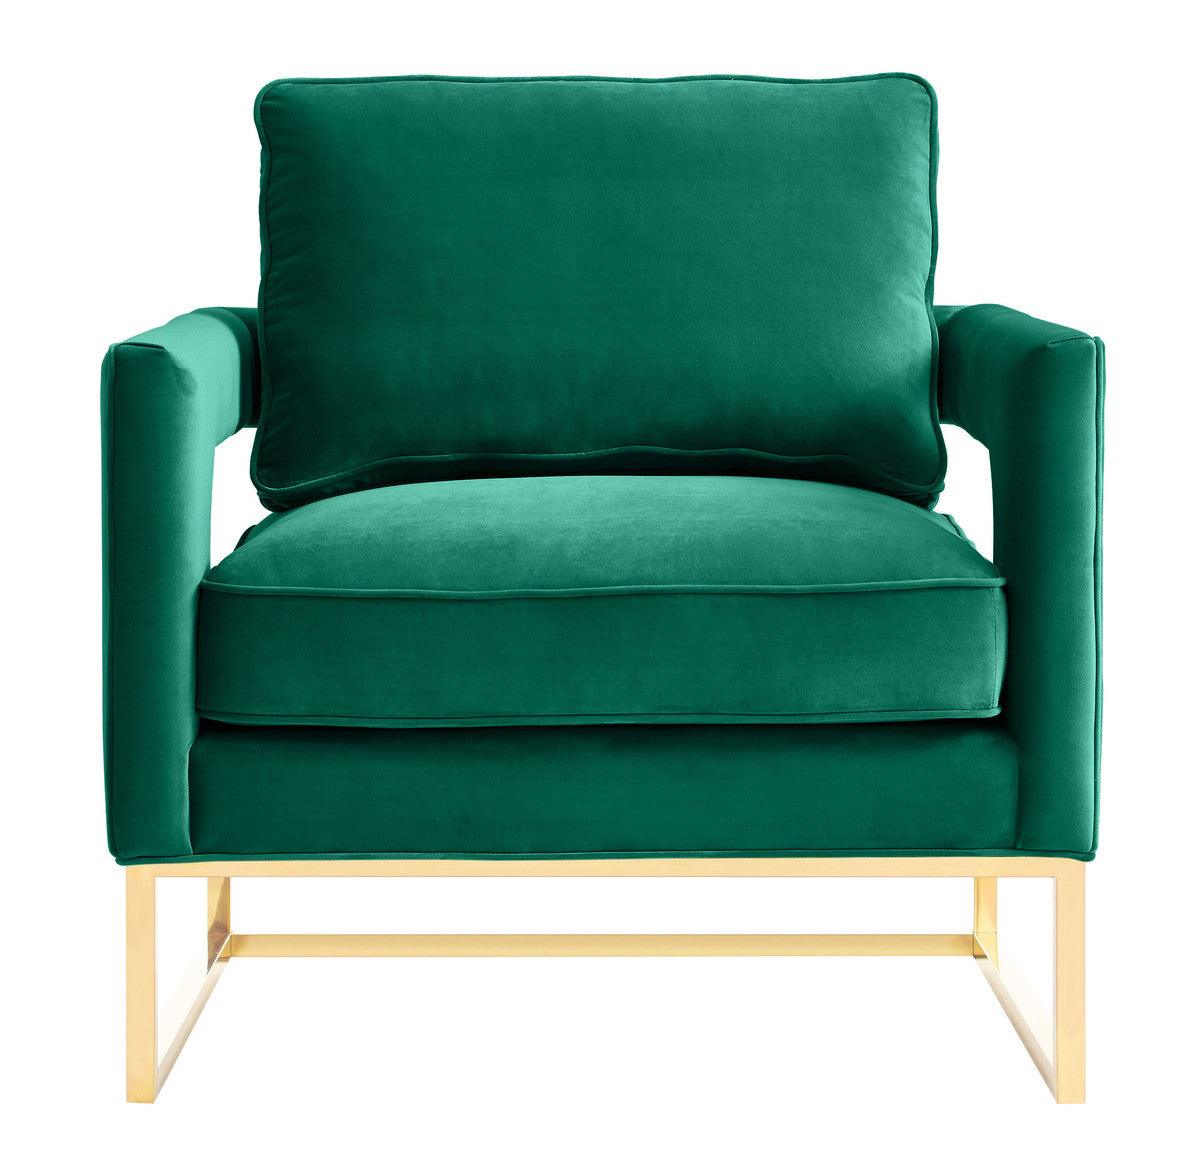 Annabelle Green Velvet Chair - Euro Living Furniture